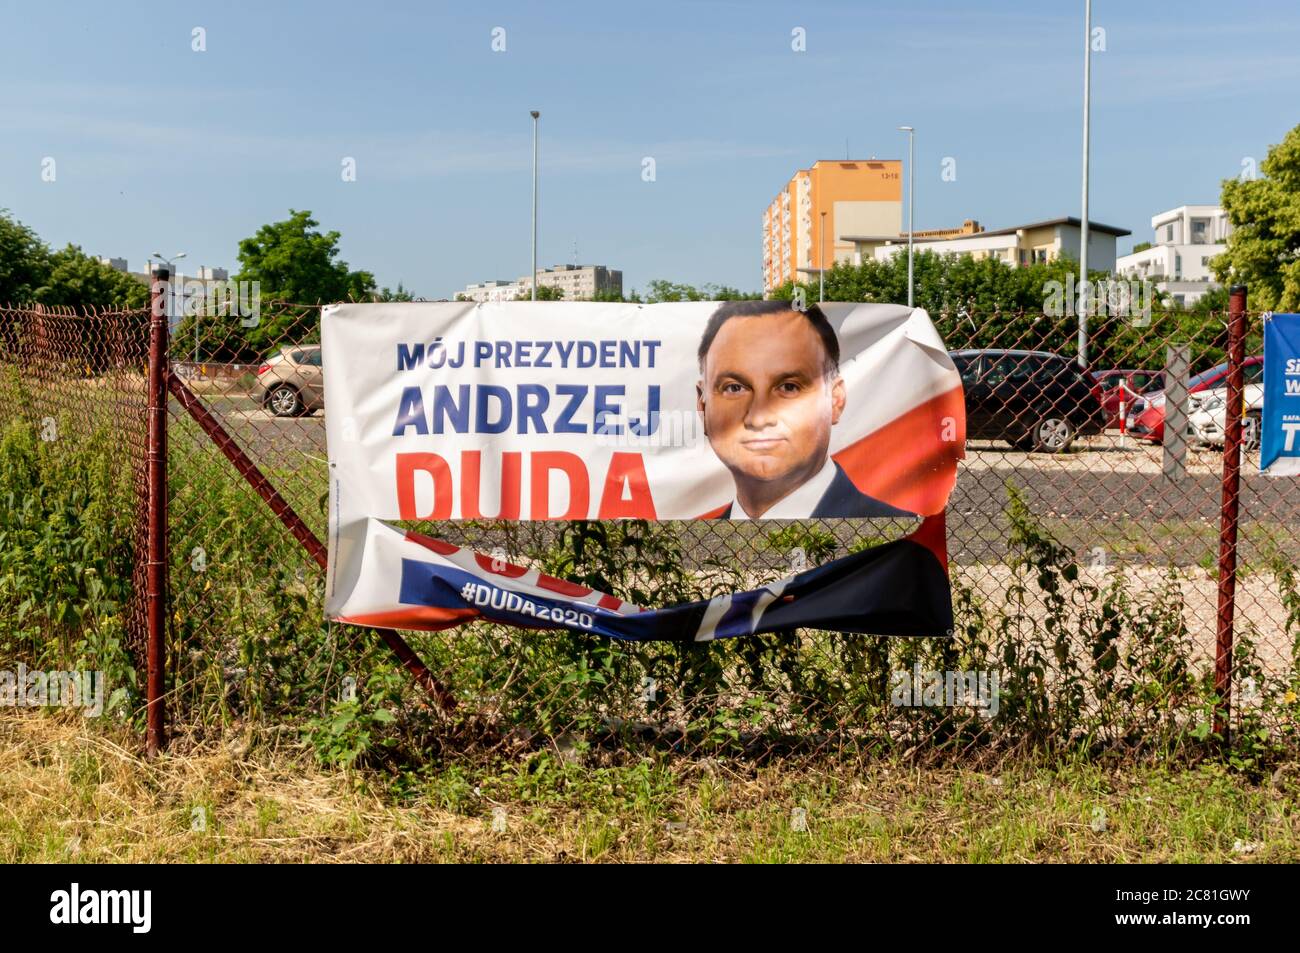 POZNAN, POLOGNE - 28 juin 2020 : bannière de campagne électorale présidentielle de Andrzej Duda tared sur une clôture Banque D'Images